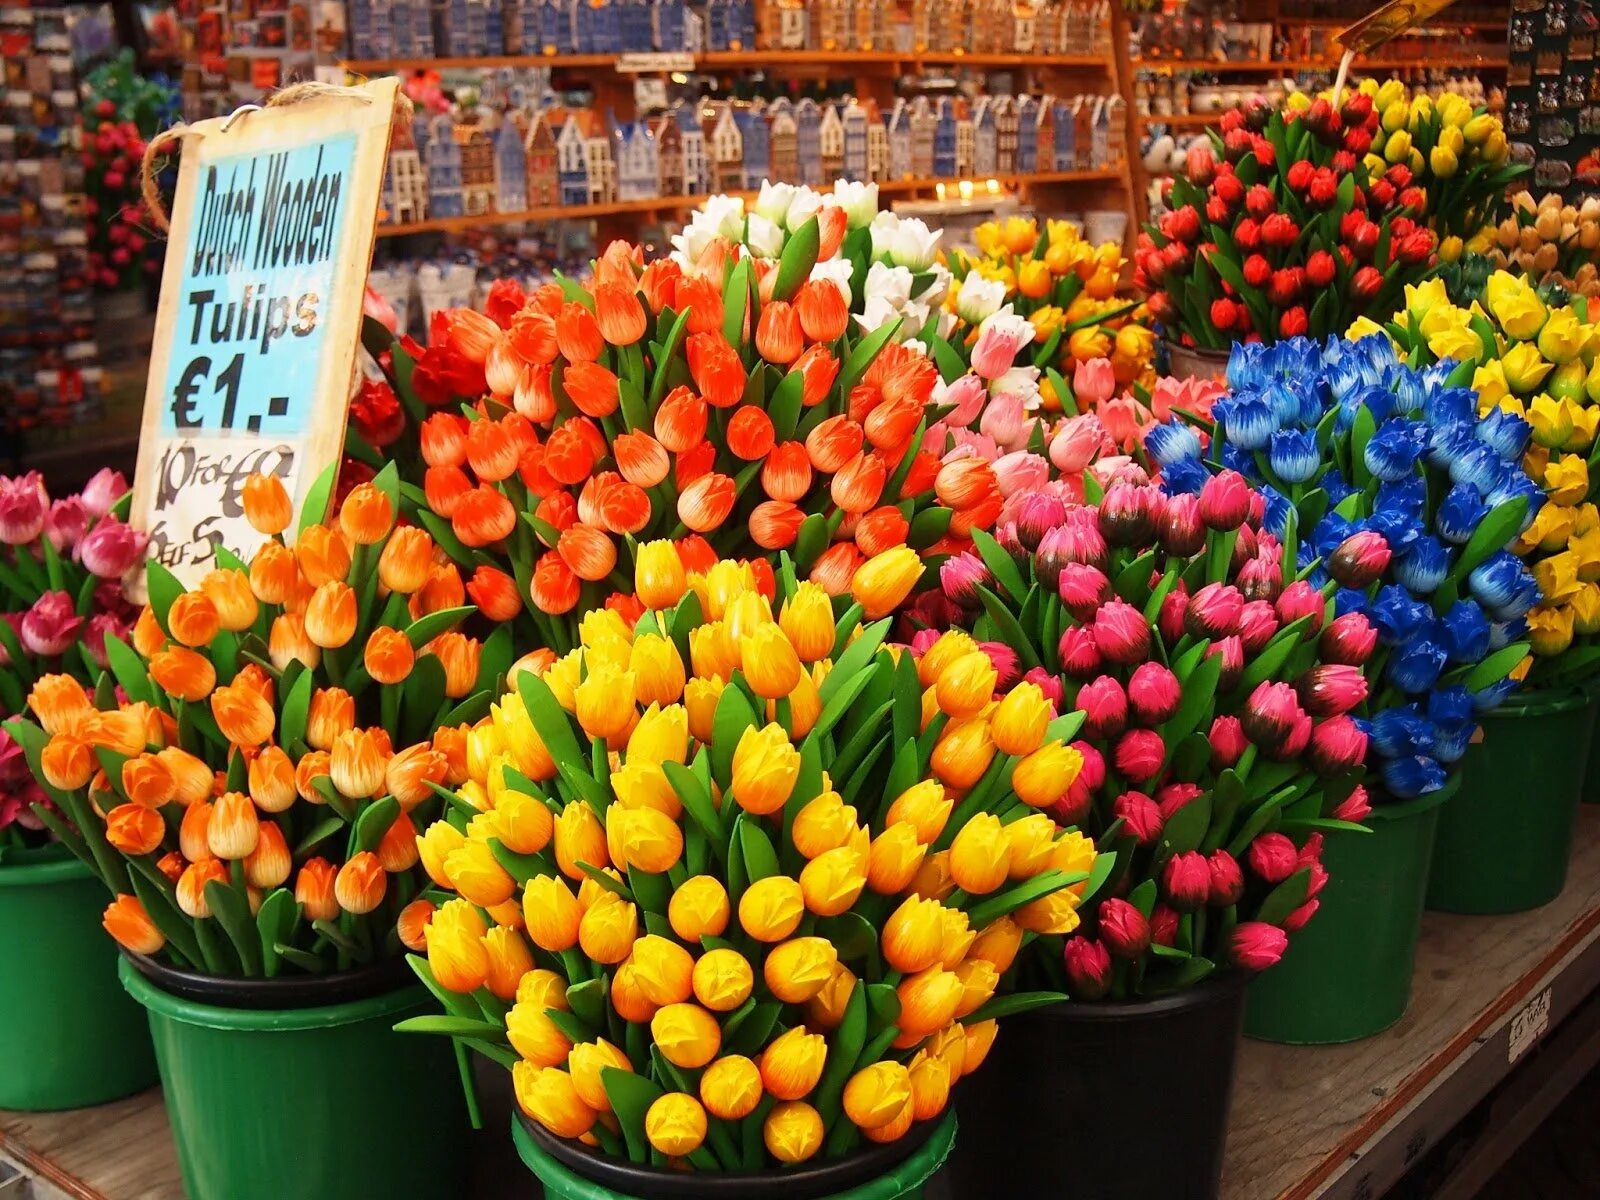 Рынок тюльпанов в Амстердаме. Голландские тюльпаны. Голландия тюльпаны. Цветы Голландии.